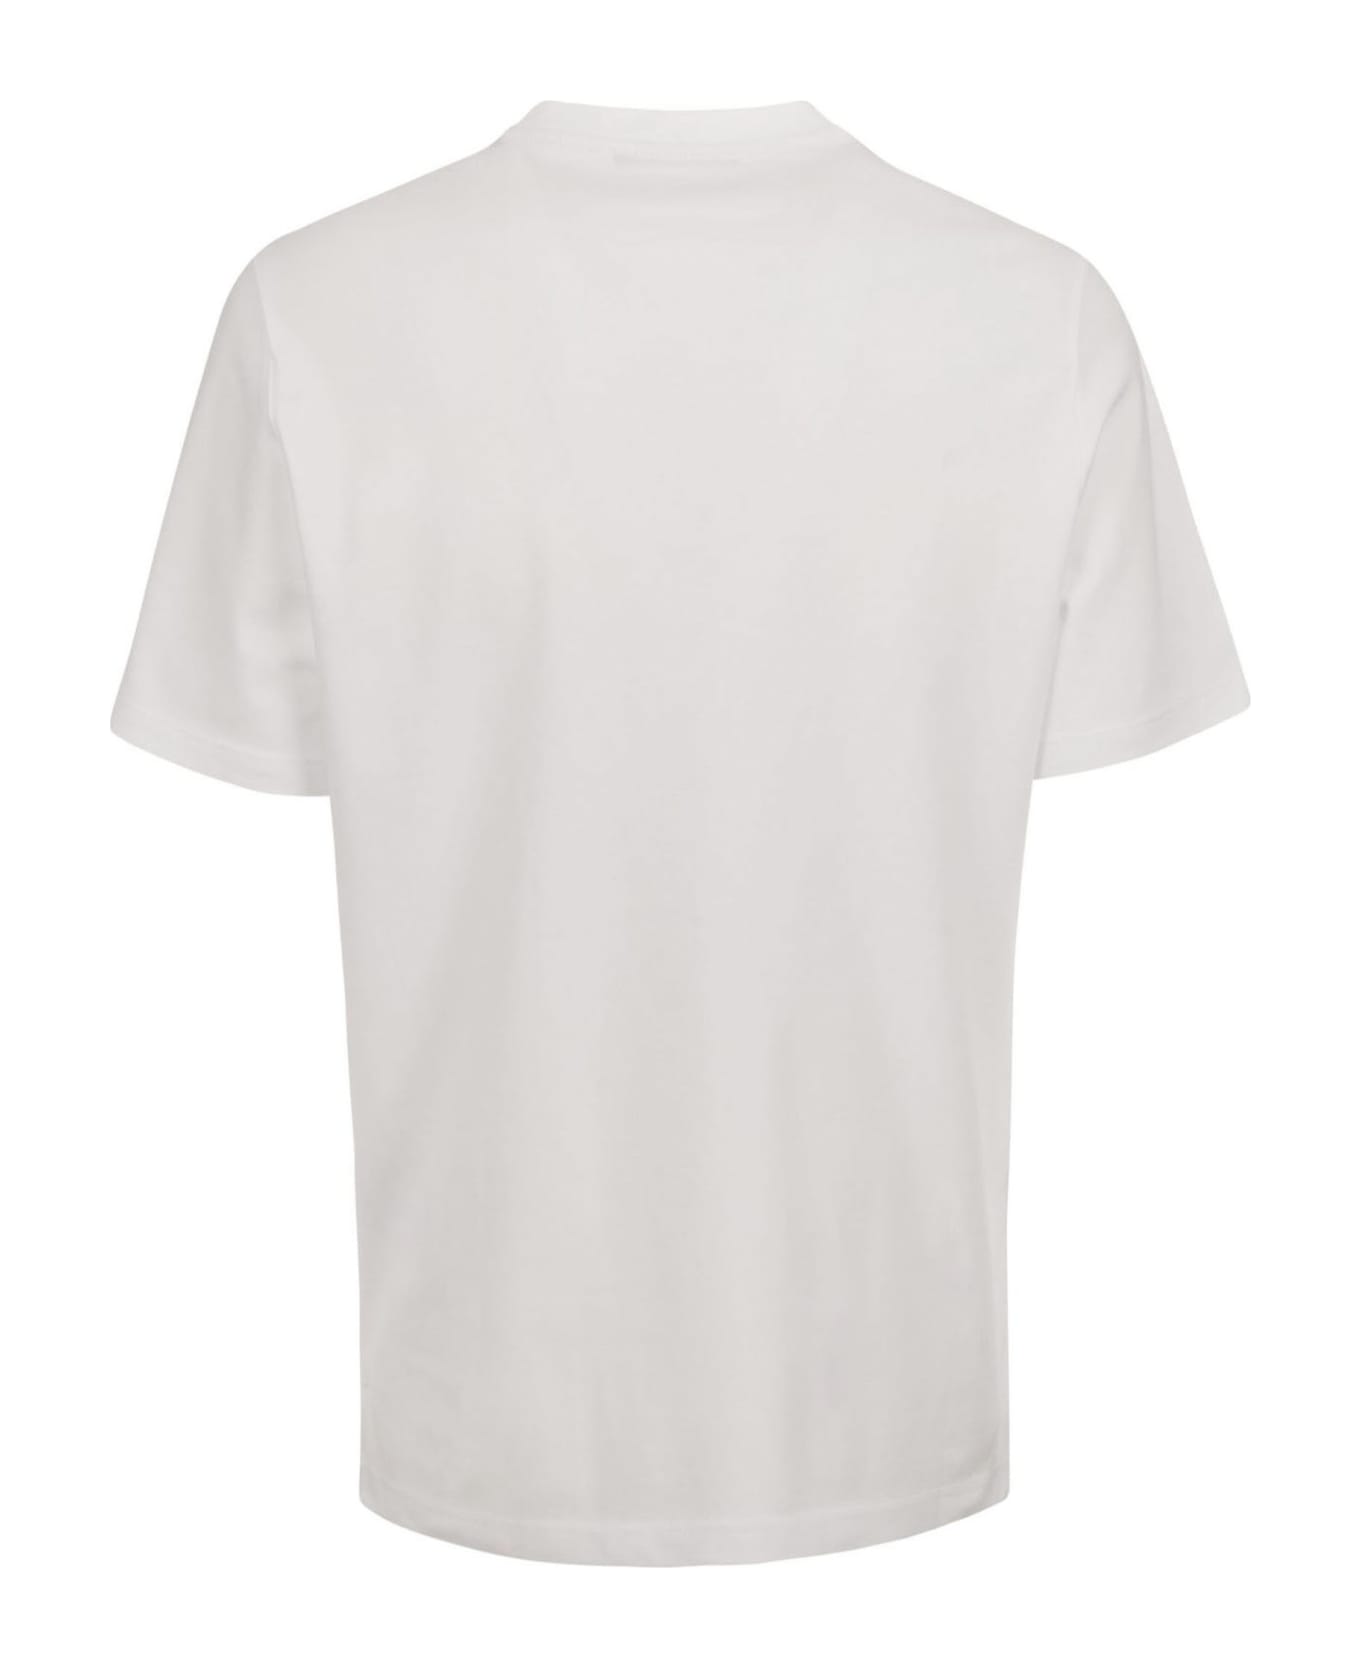 Kangra White Cotton T-shirt - White